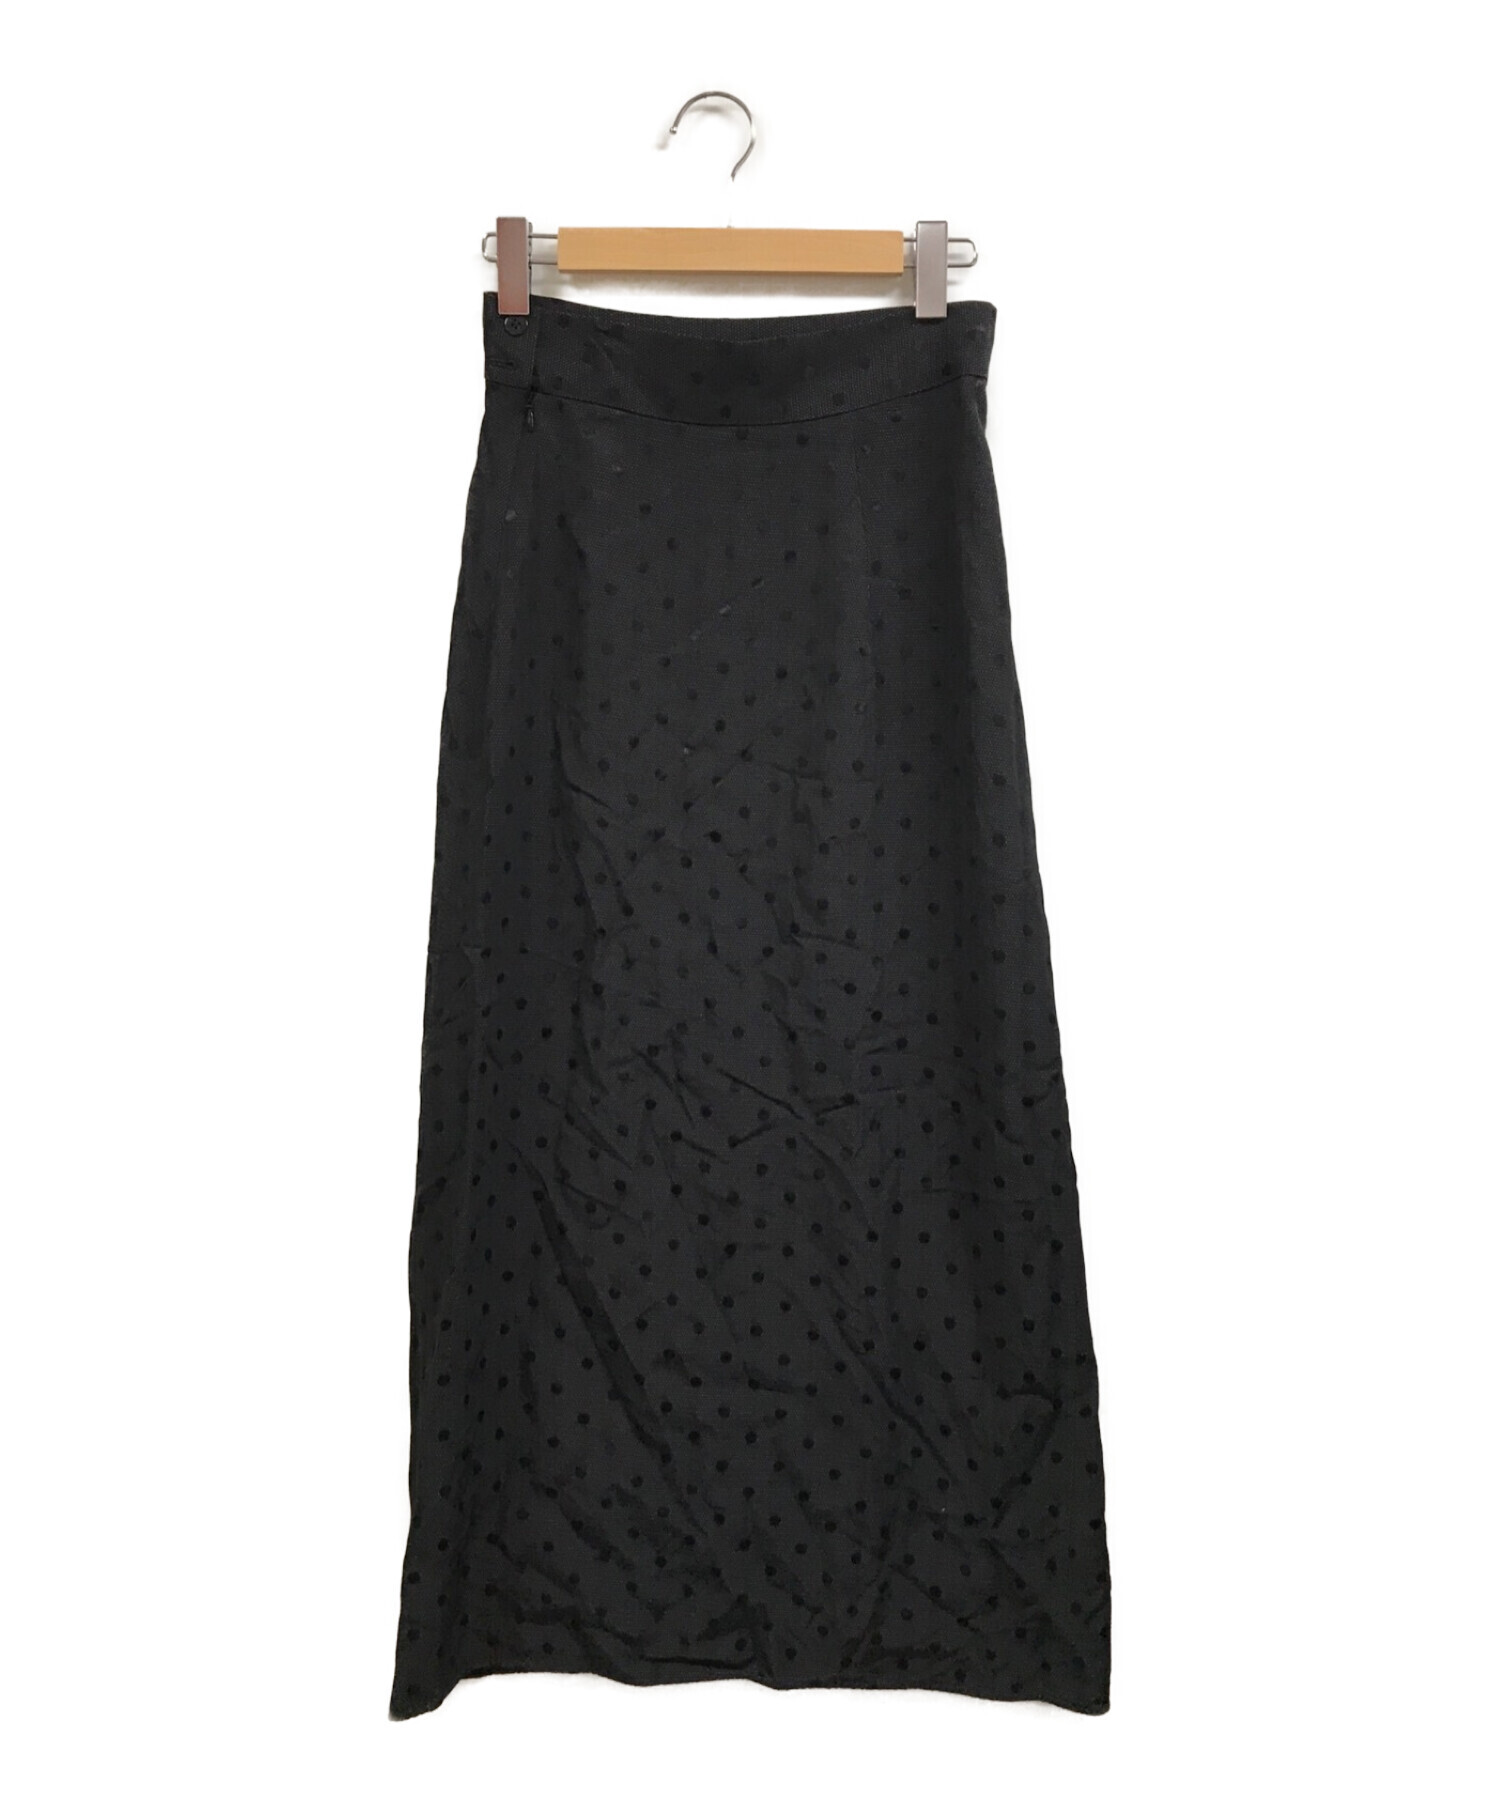 BACCA (バッカ) シャドードット ロングセミタイトスカート ブラック サイズ:36